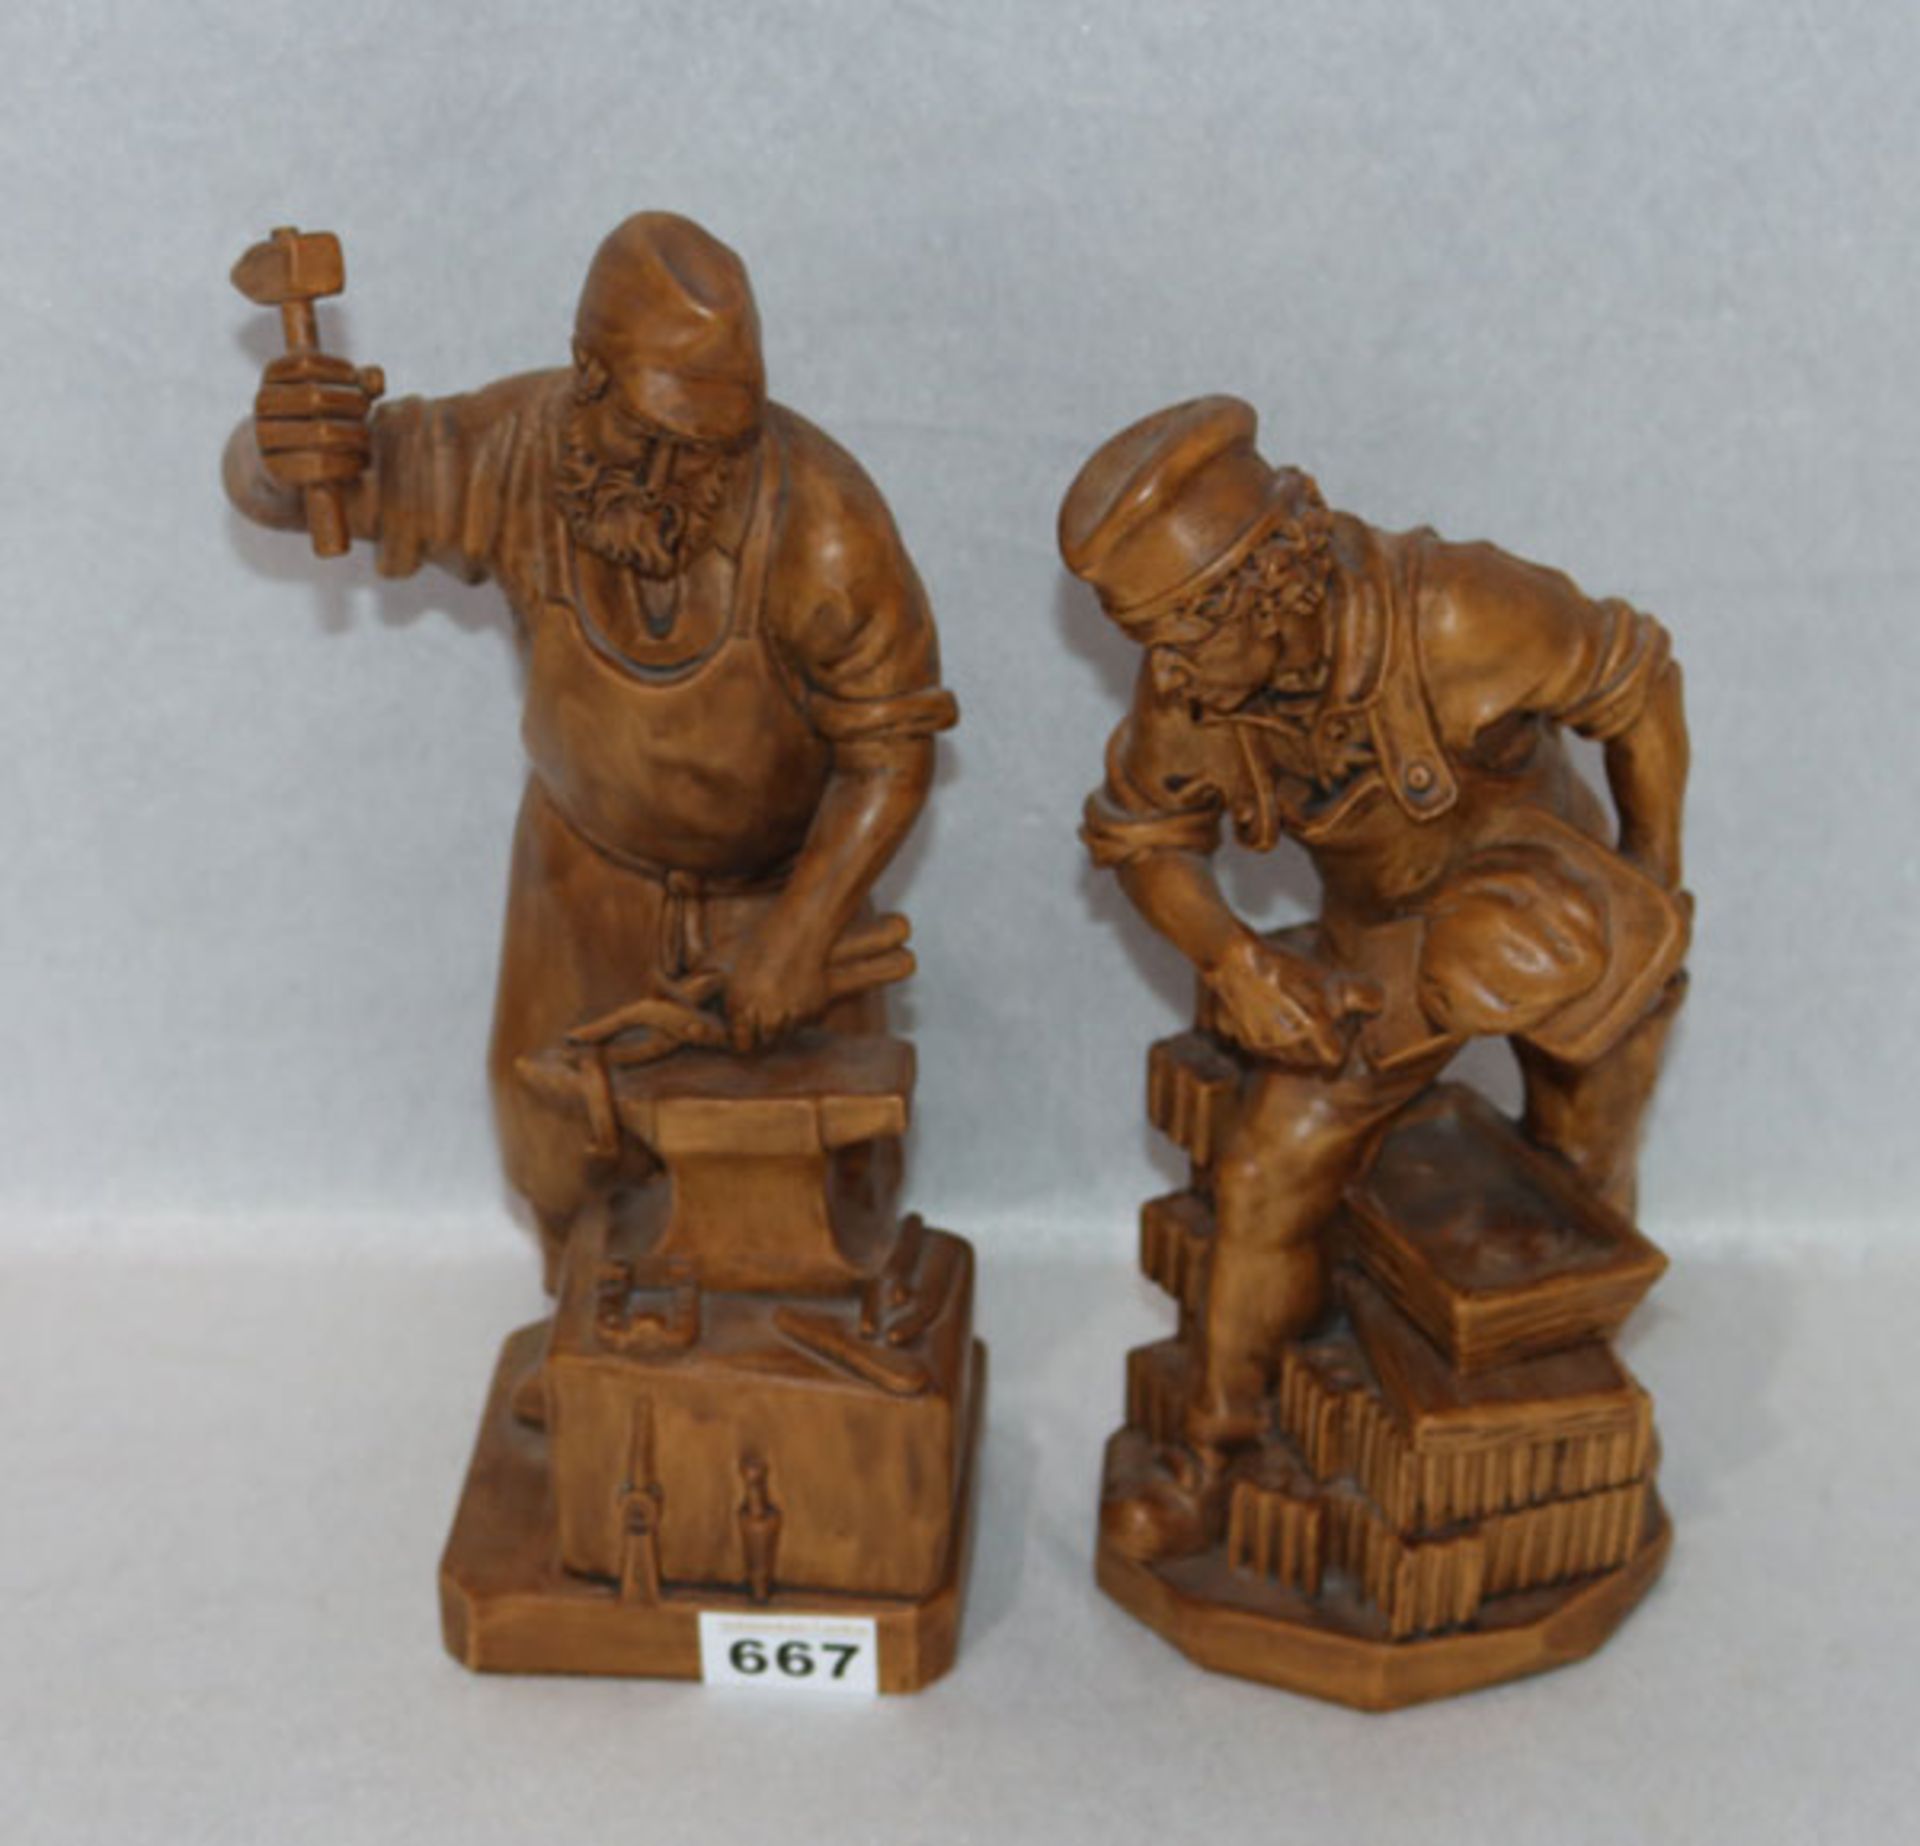 2 Holzfiguren Handwerker 'Maurer' und 'Schmied', dunkel gebeizt, mit Klebeetikett Holzschnitzerei